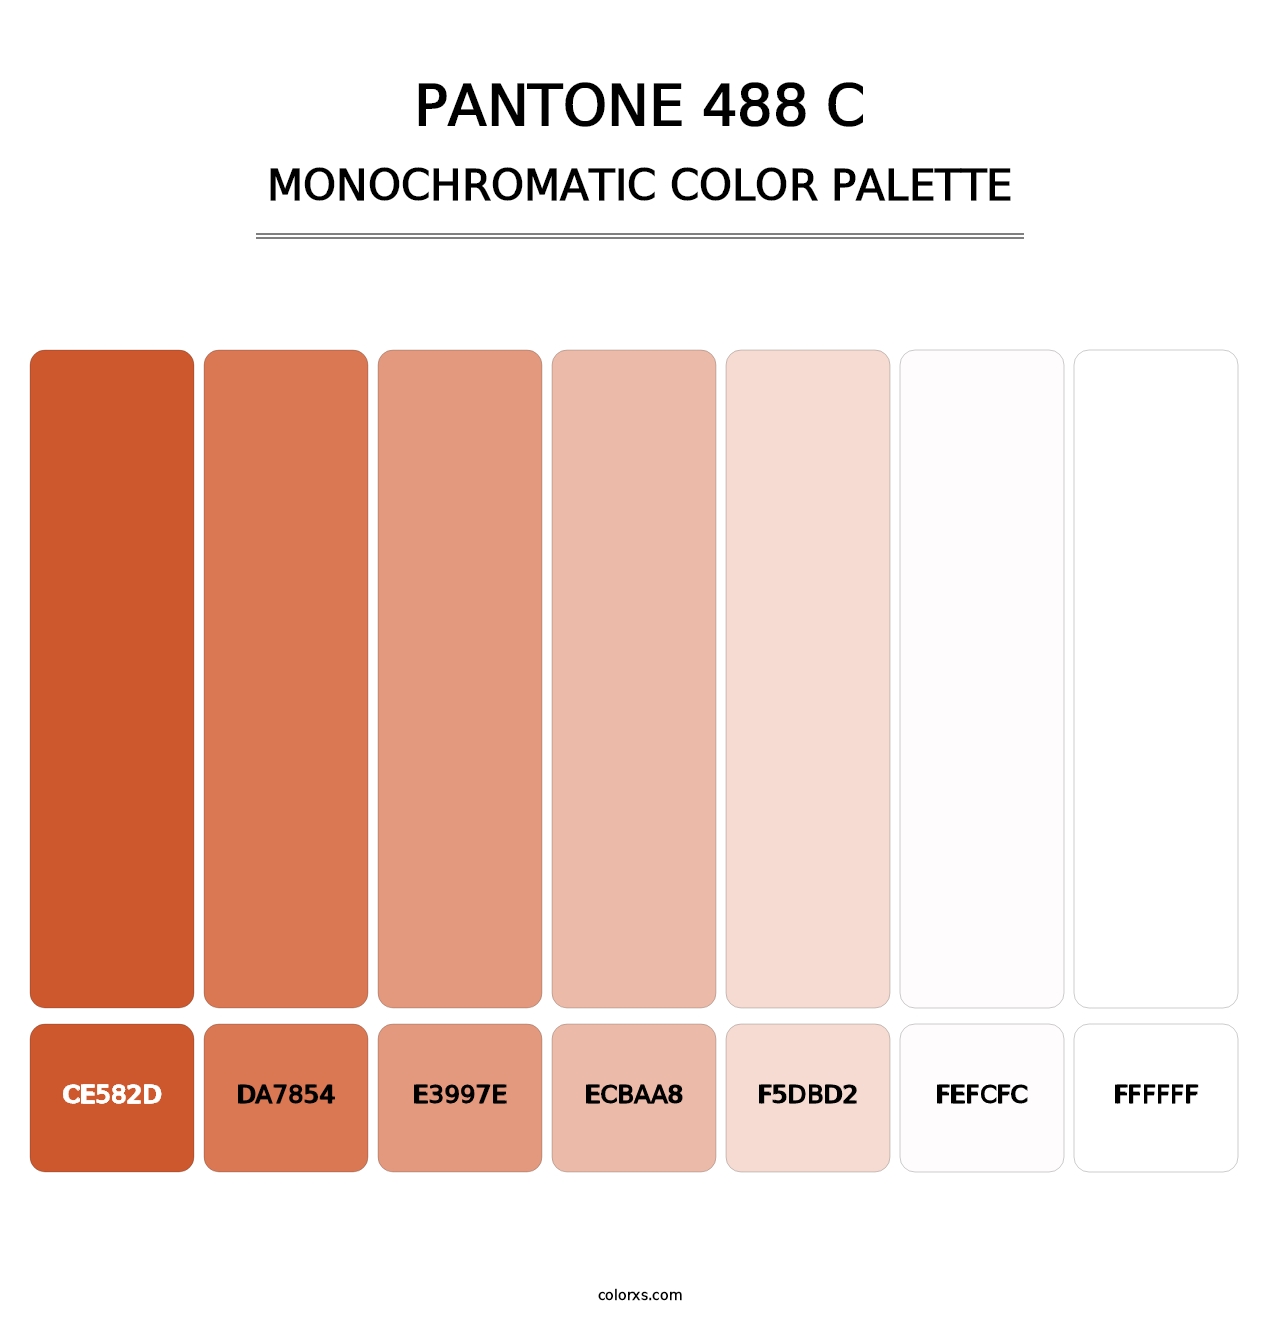 PANTONE 488 C - Monochromatic Color Palette